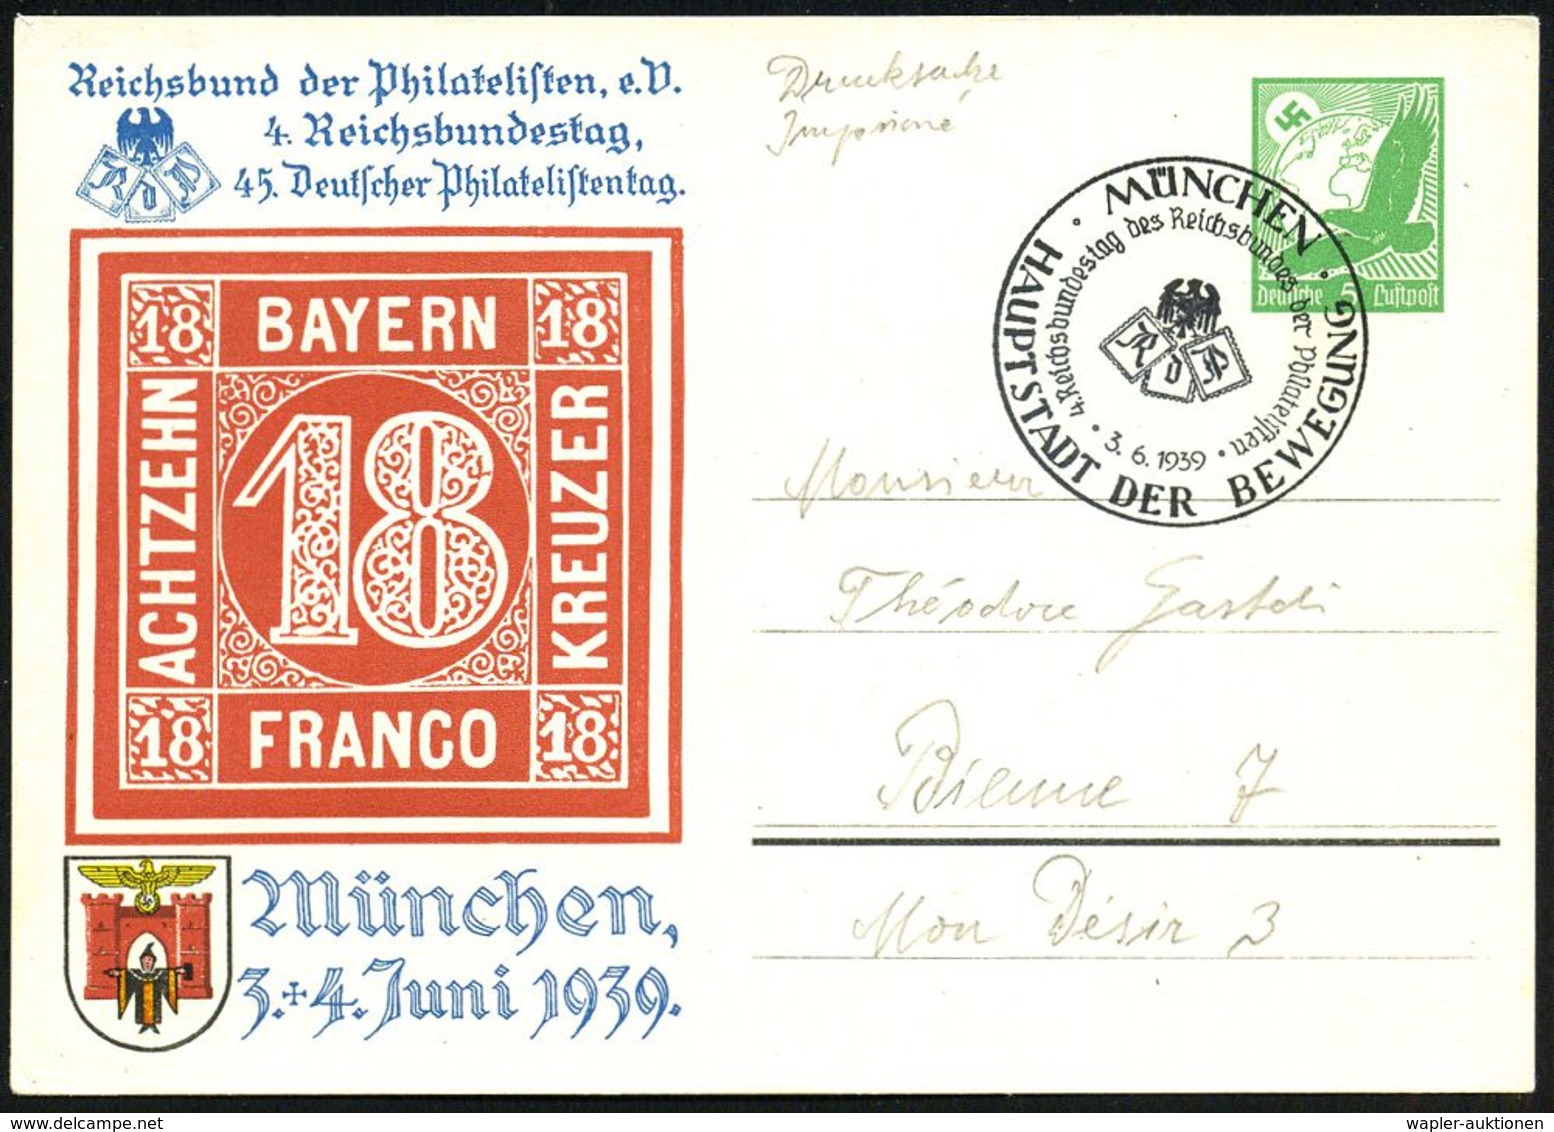 MÜNCHEN/ HDB/ 4.Reichsbundestag Des Reichsbundes Der Philatelisten 1939 (3.6.) SSt Auf PP 5 Pf. Adler, Grün: 4. Reichsbu - Philatelic Exhibitions